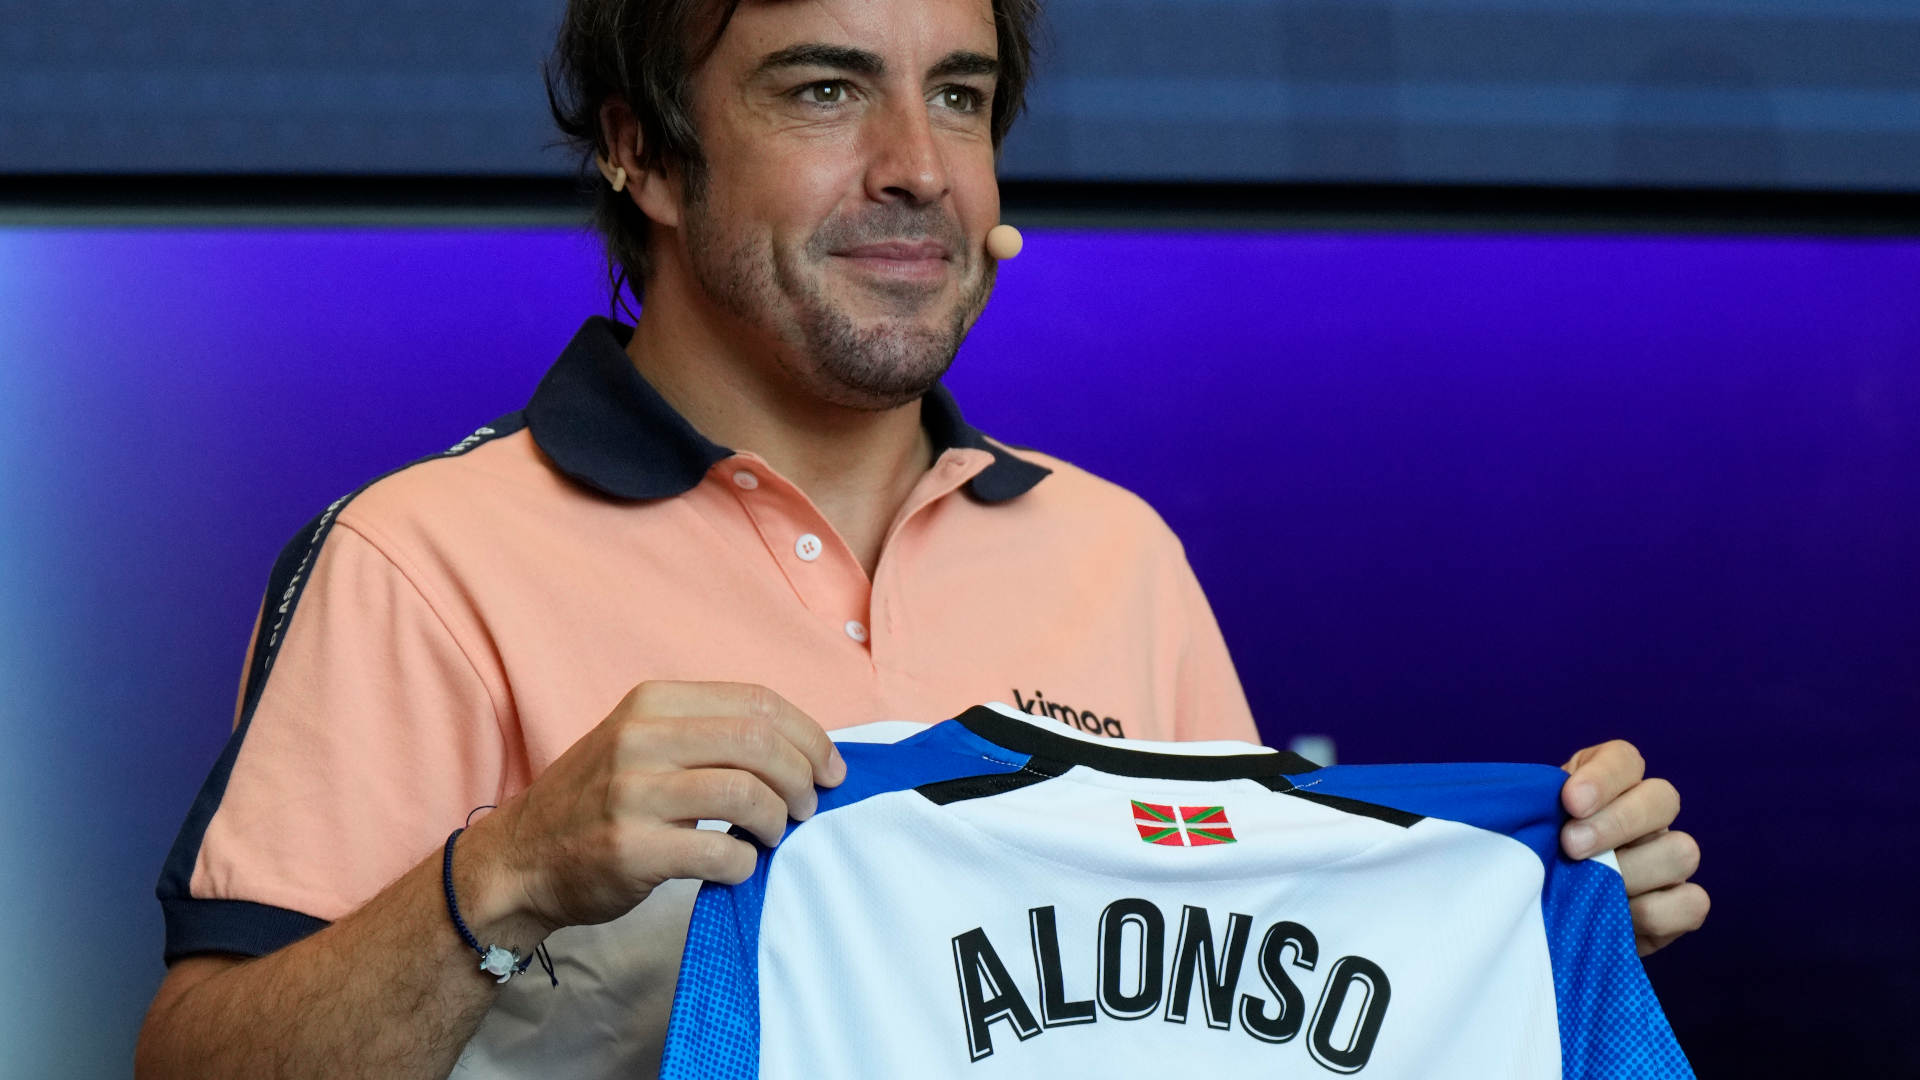 Ir al Video Fernando Alonso analiza el Mundial en clave futbolera: "Hemos jugado muy bien, pero no hemos ganado nada"